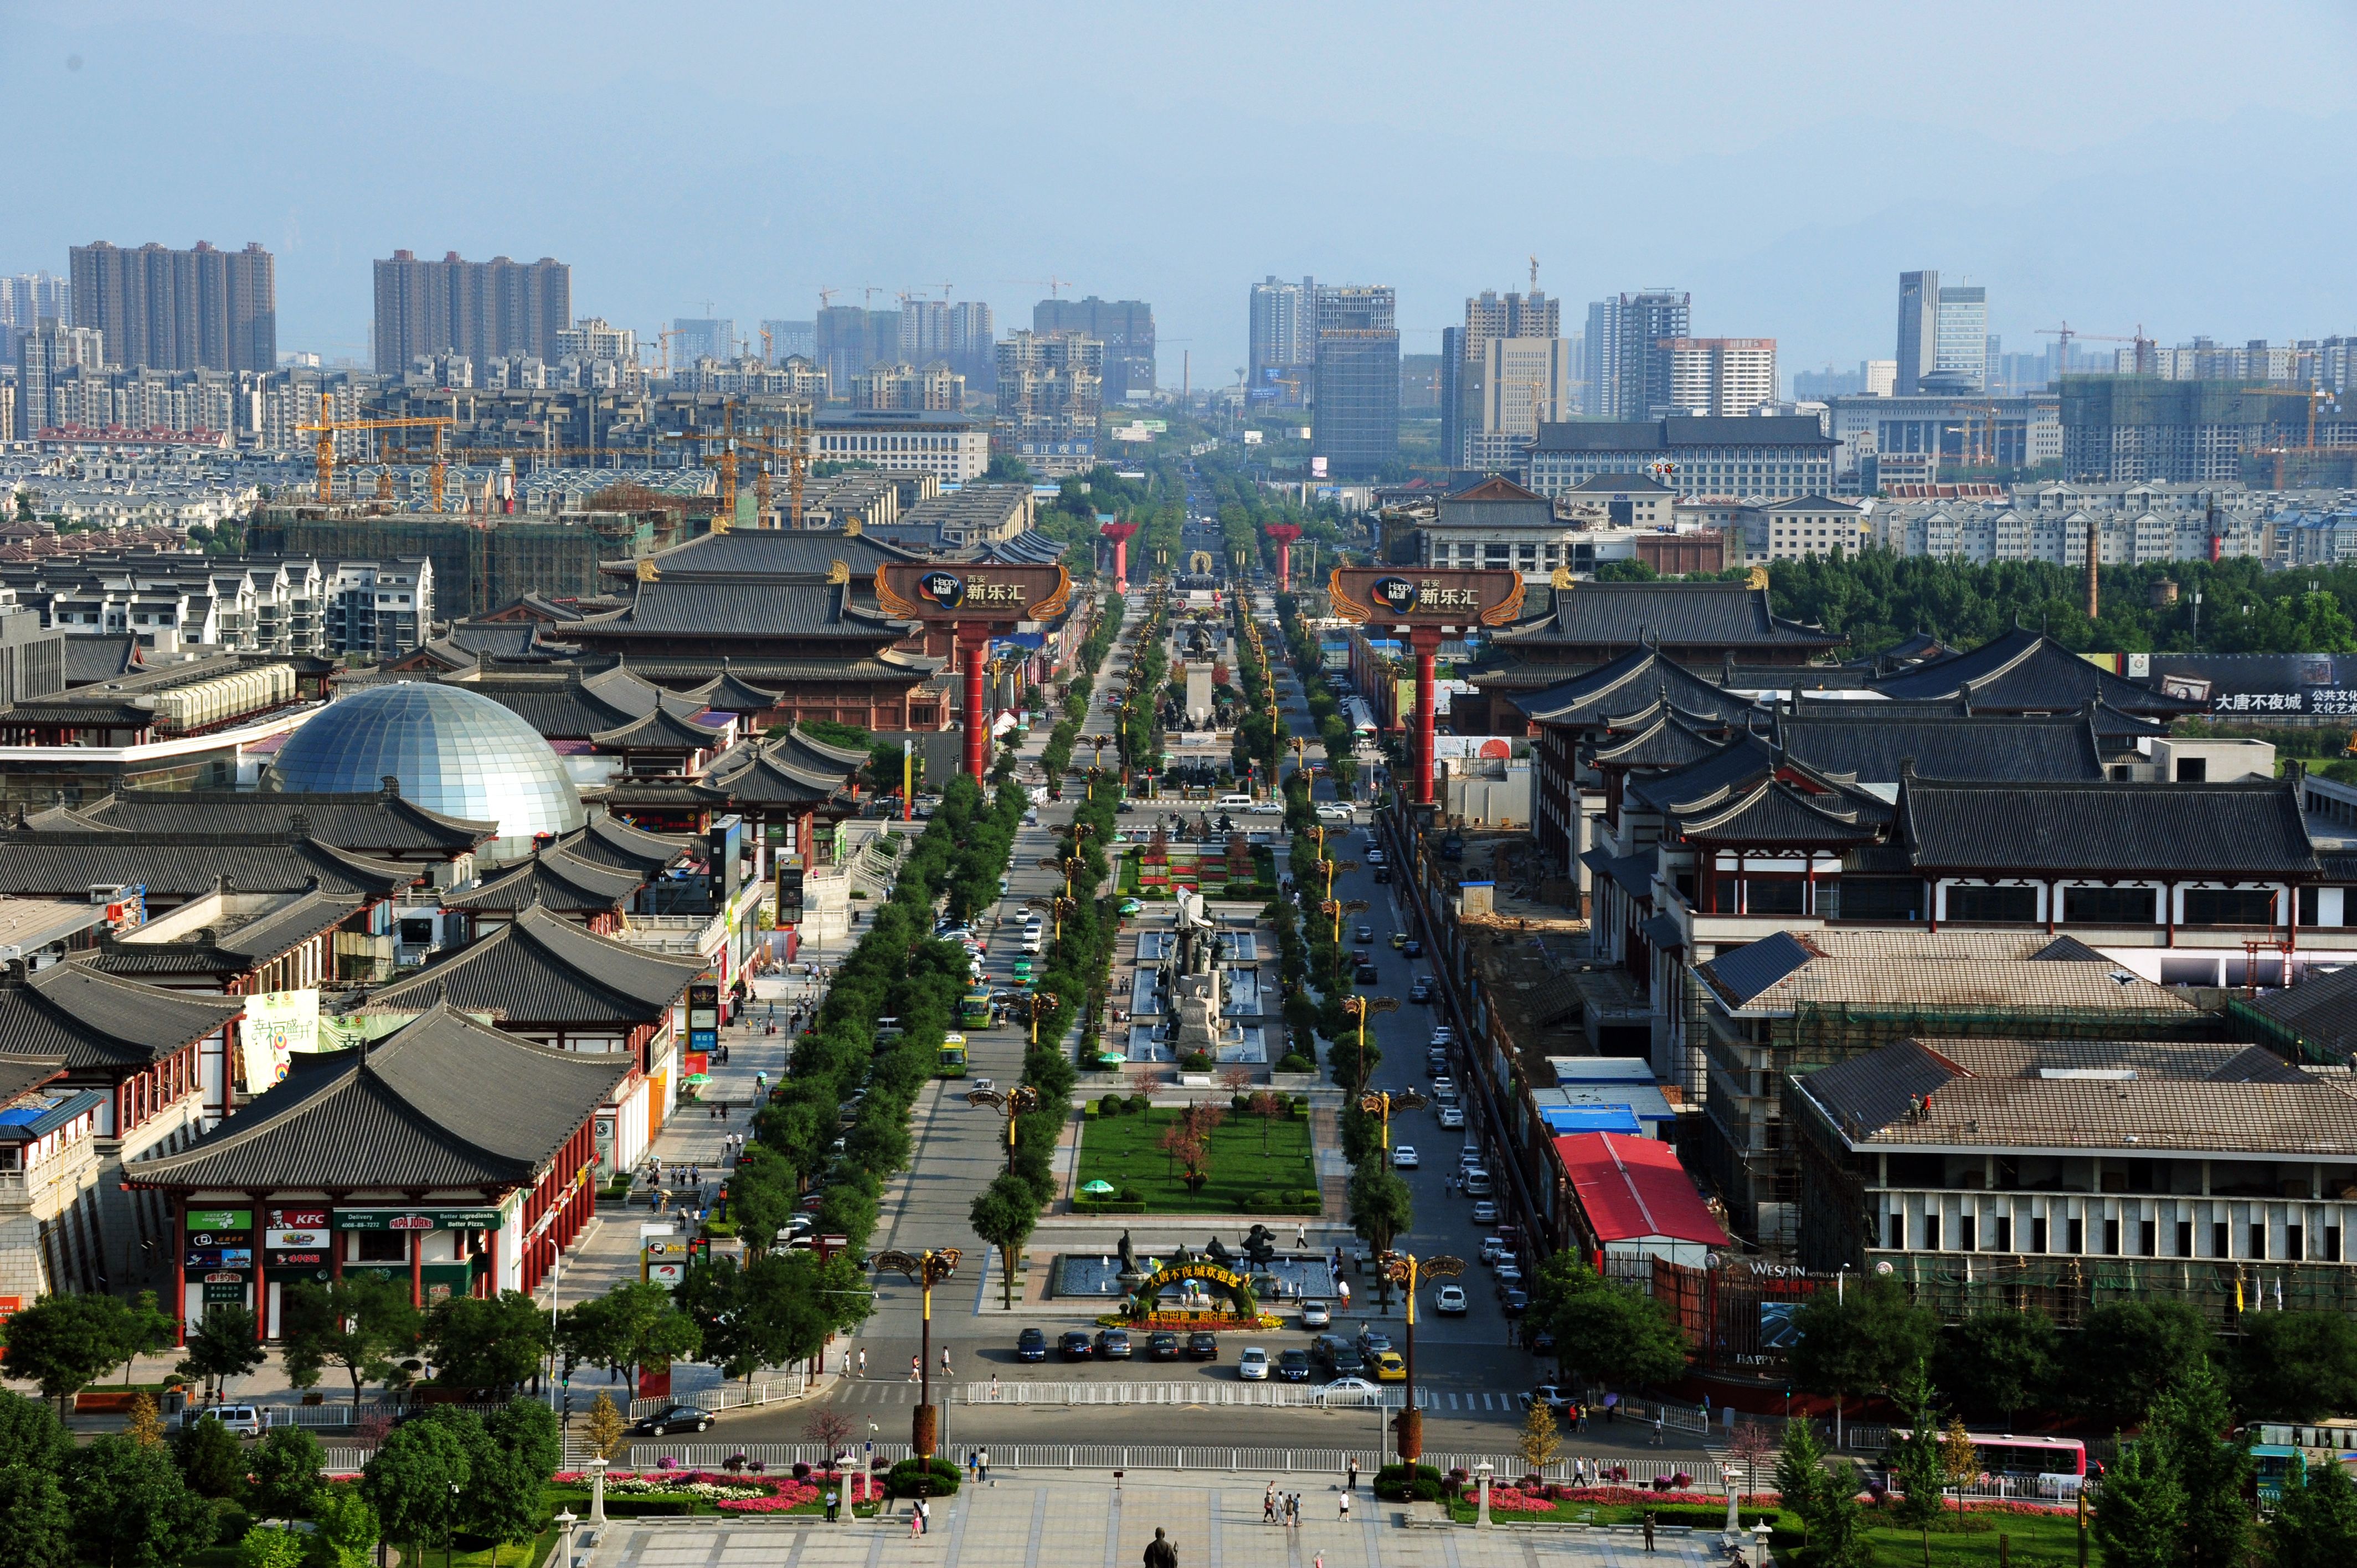 фотографии китайского города